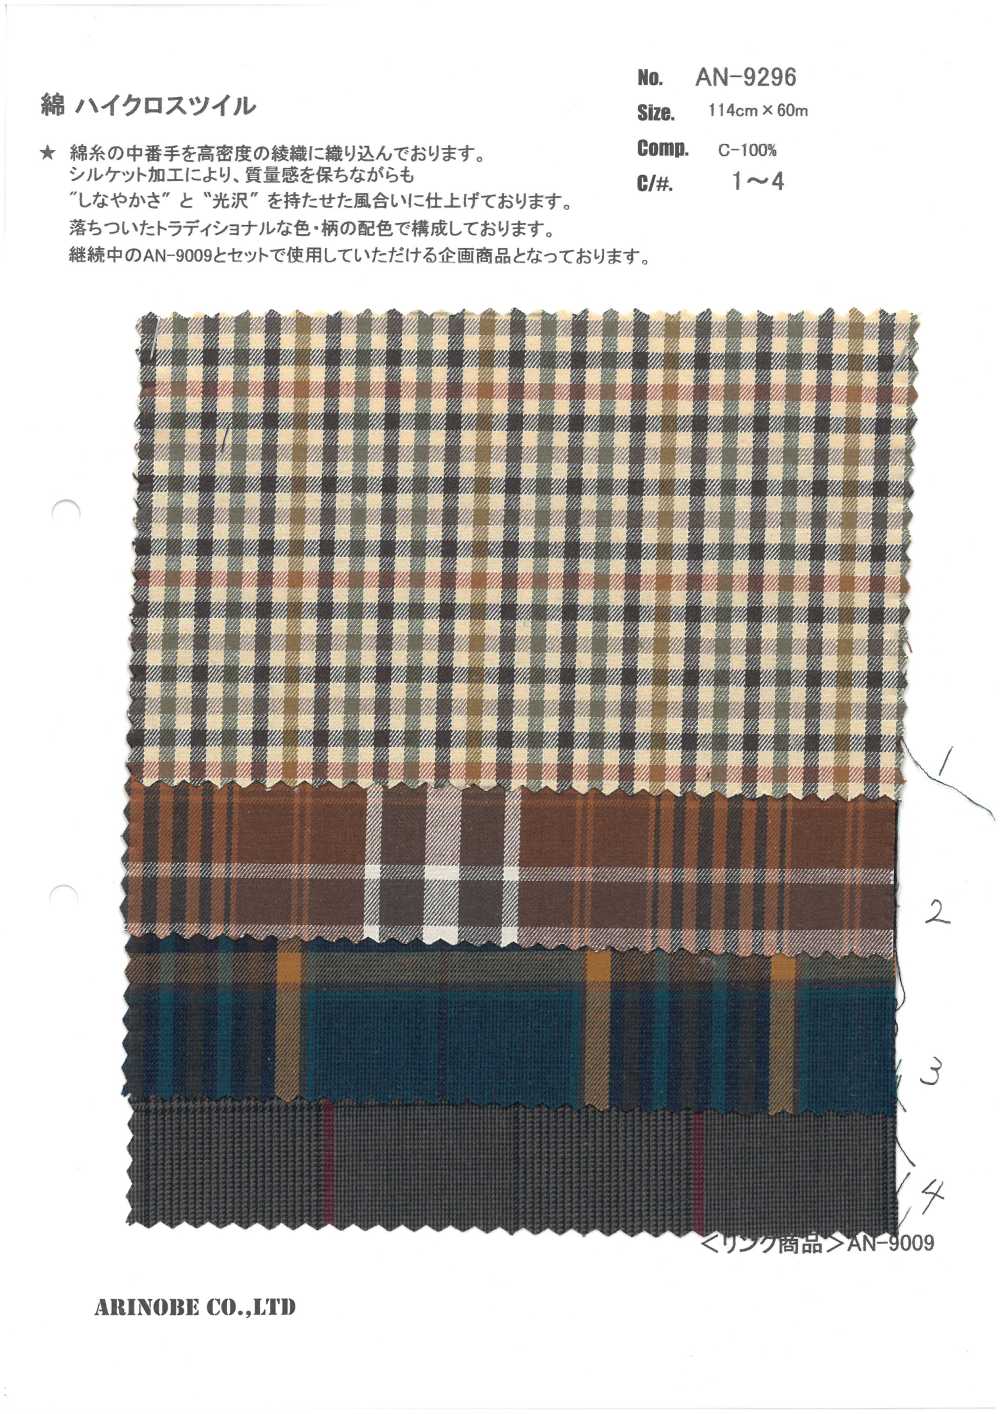 AN-9296 Cotton High Cloth Twill[Textile / Fabric] ARINOBE CO., LTD.